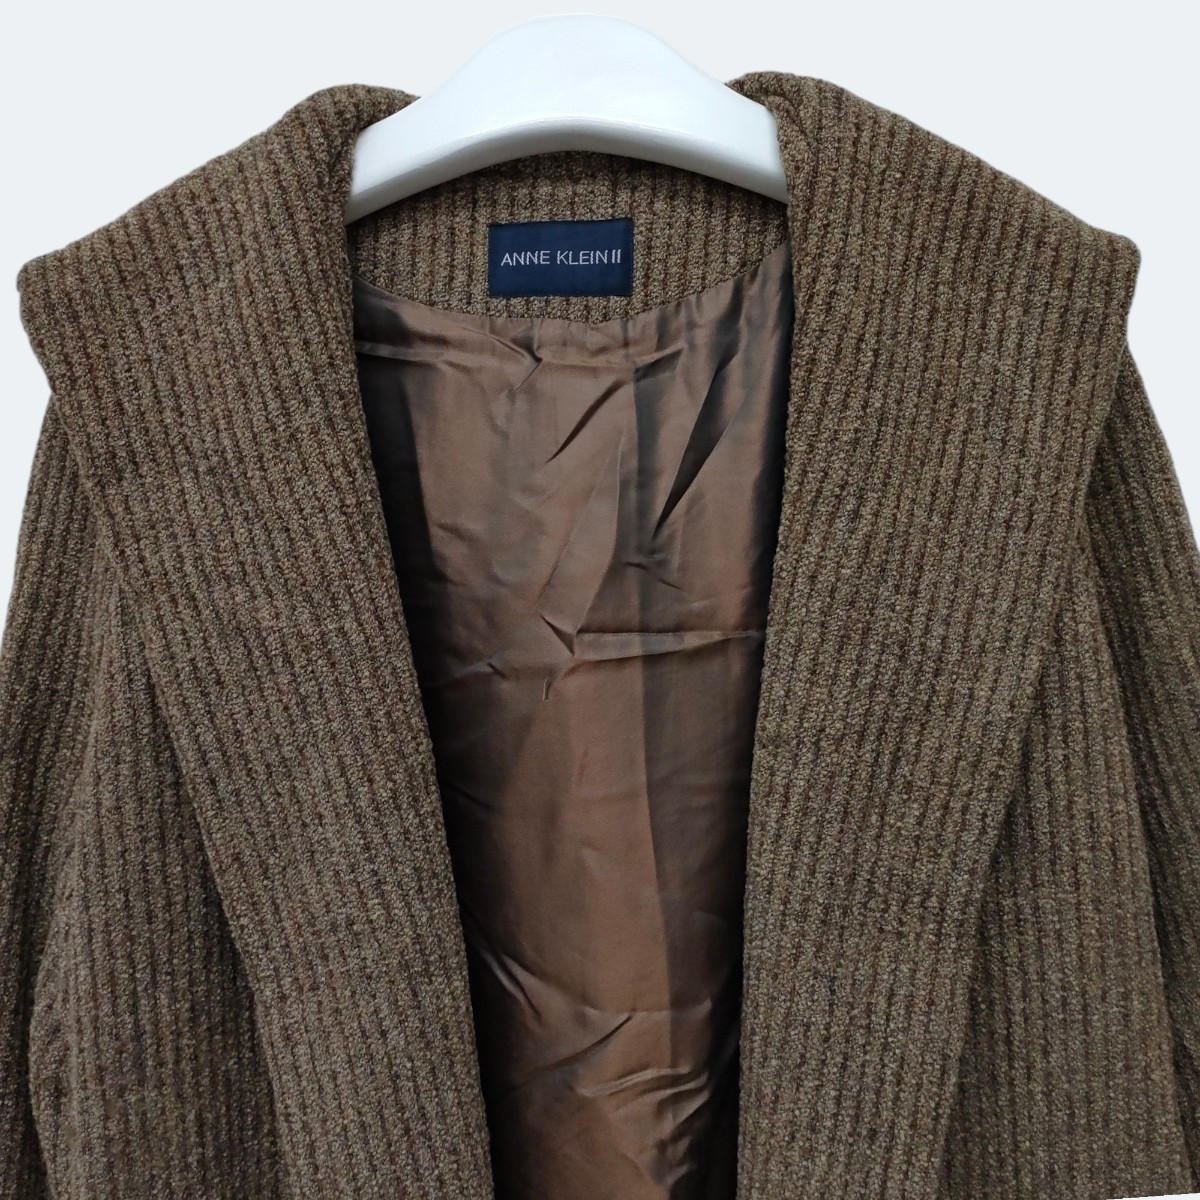 ANNE KLEIN Ⅱ / アンクライン レディース ウール混 ロングコート フーディ 9サイズ ブラウン 羽織り 日本製 a-1119_画像2